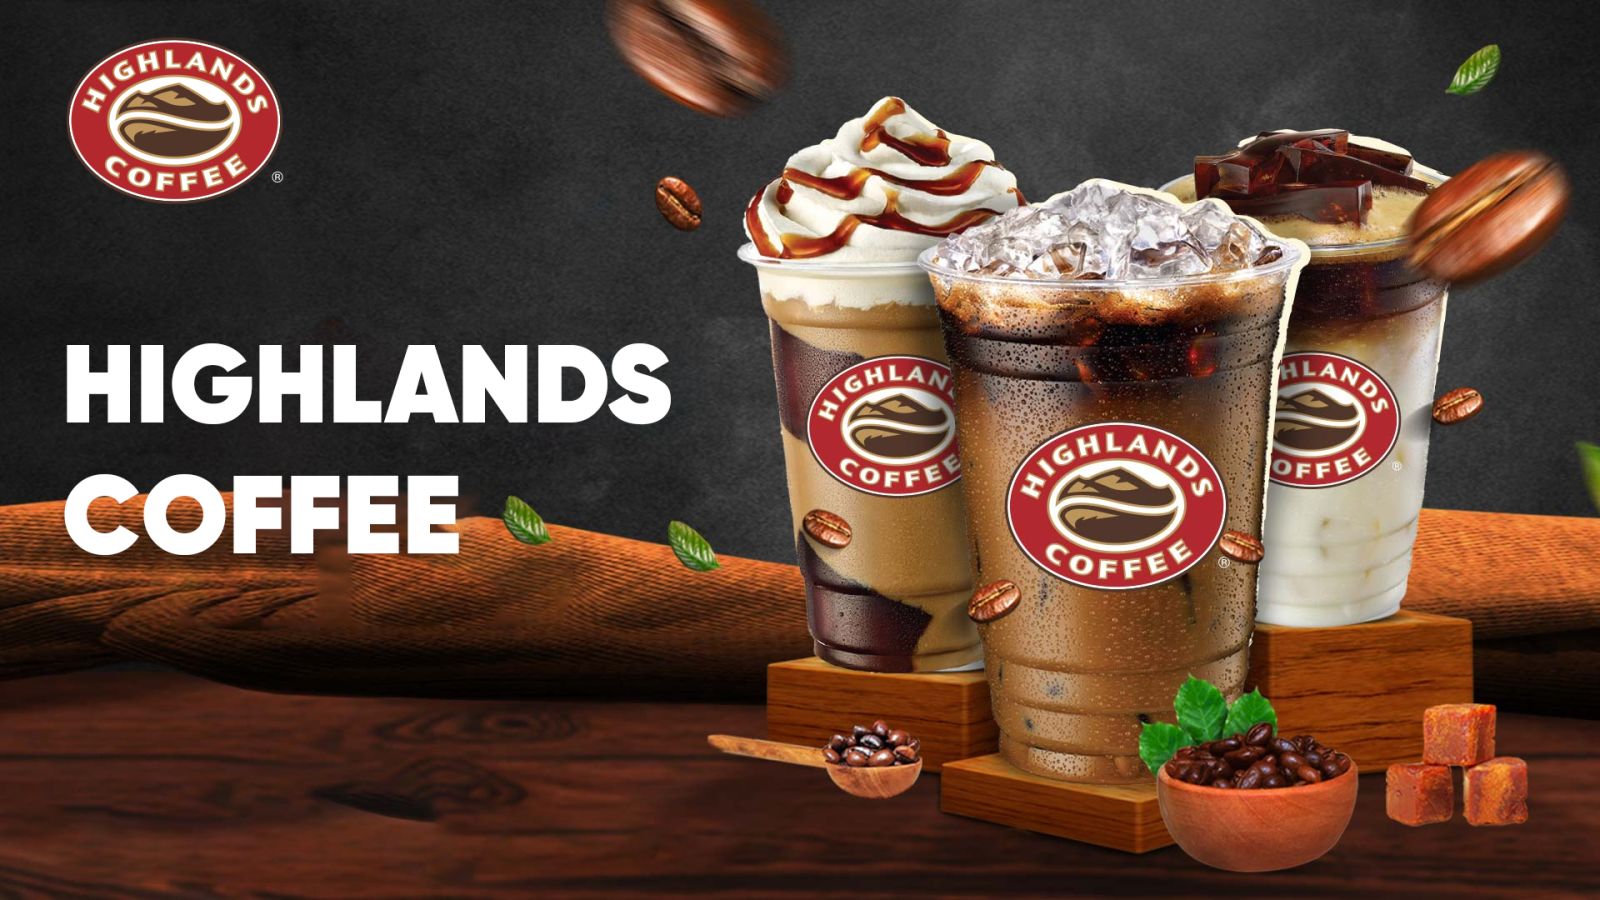 Highlands Coffee nhanh chóng phát triển và mở rộng thành chuỗi quán cà phê nổi tiếng 